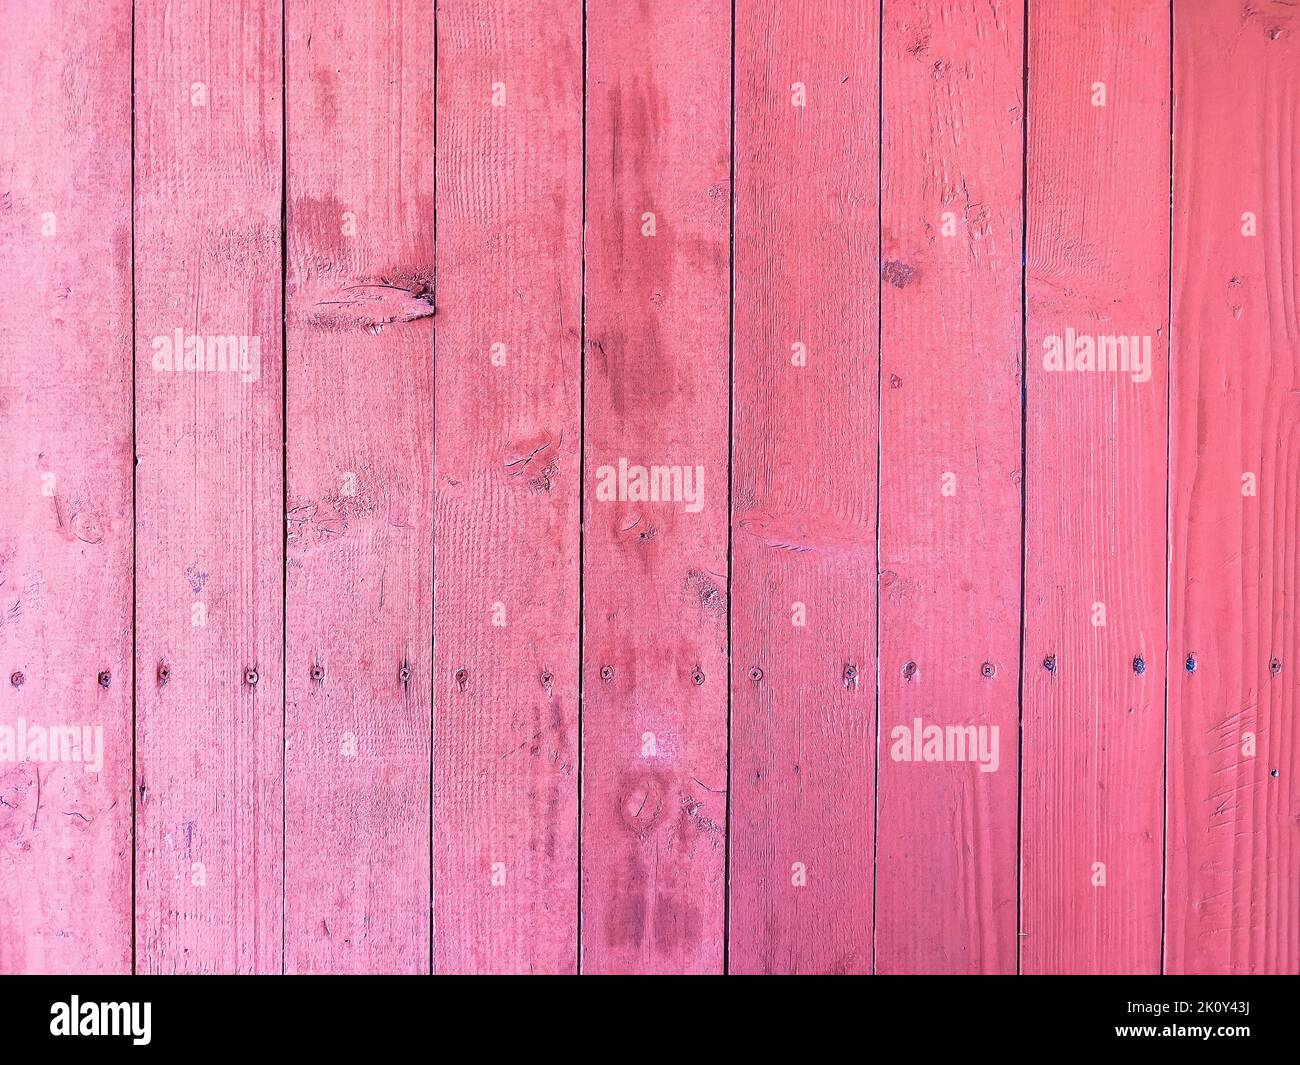 Rosa Planken als Hintergrund. Textur von alten abgenutzten Holzbrettern für Hartholzböden im Freien verwendet. Stockfoto